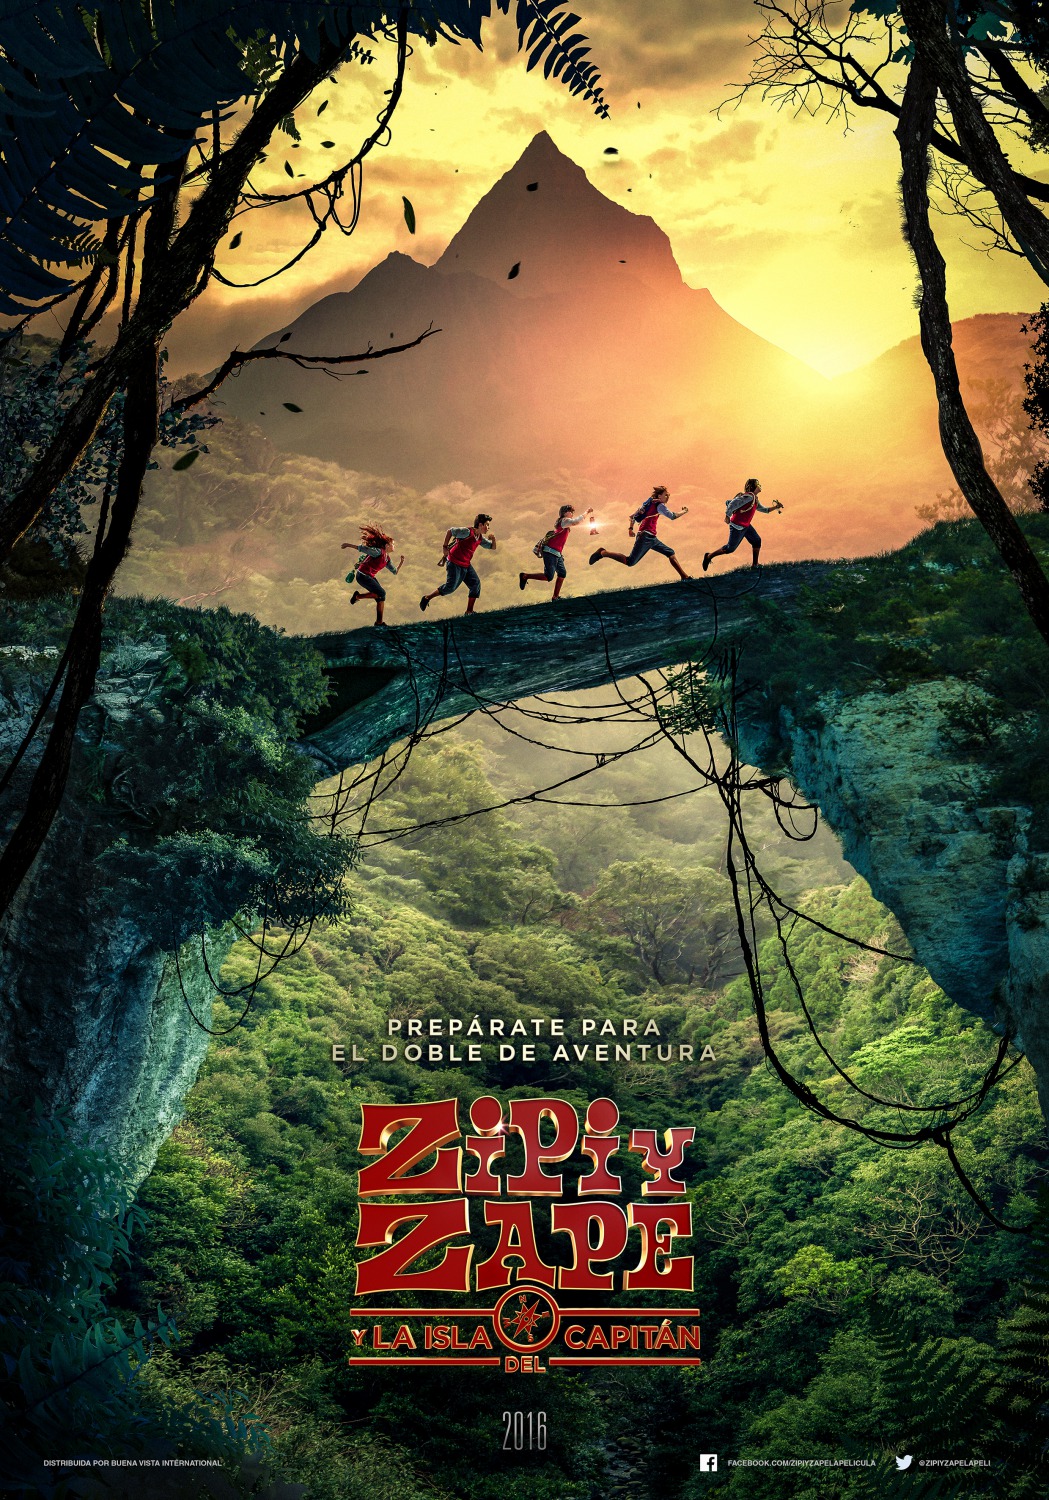 Extra Large Movie Poster Image for Zipi y Zape y la Isla del Capitán (#1 of 6)